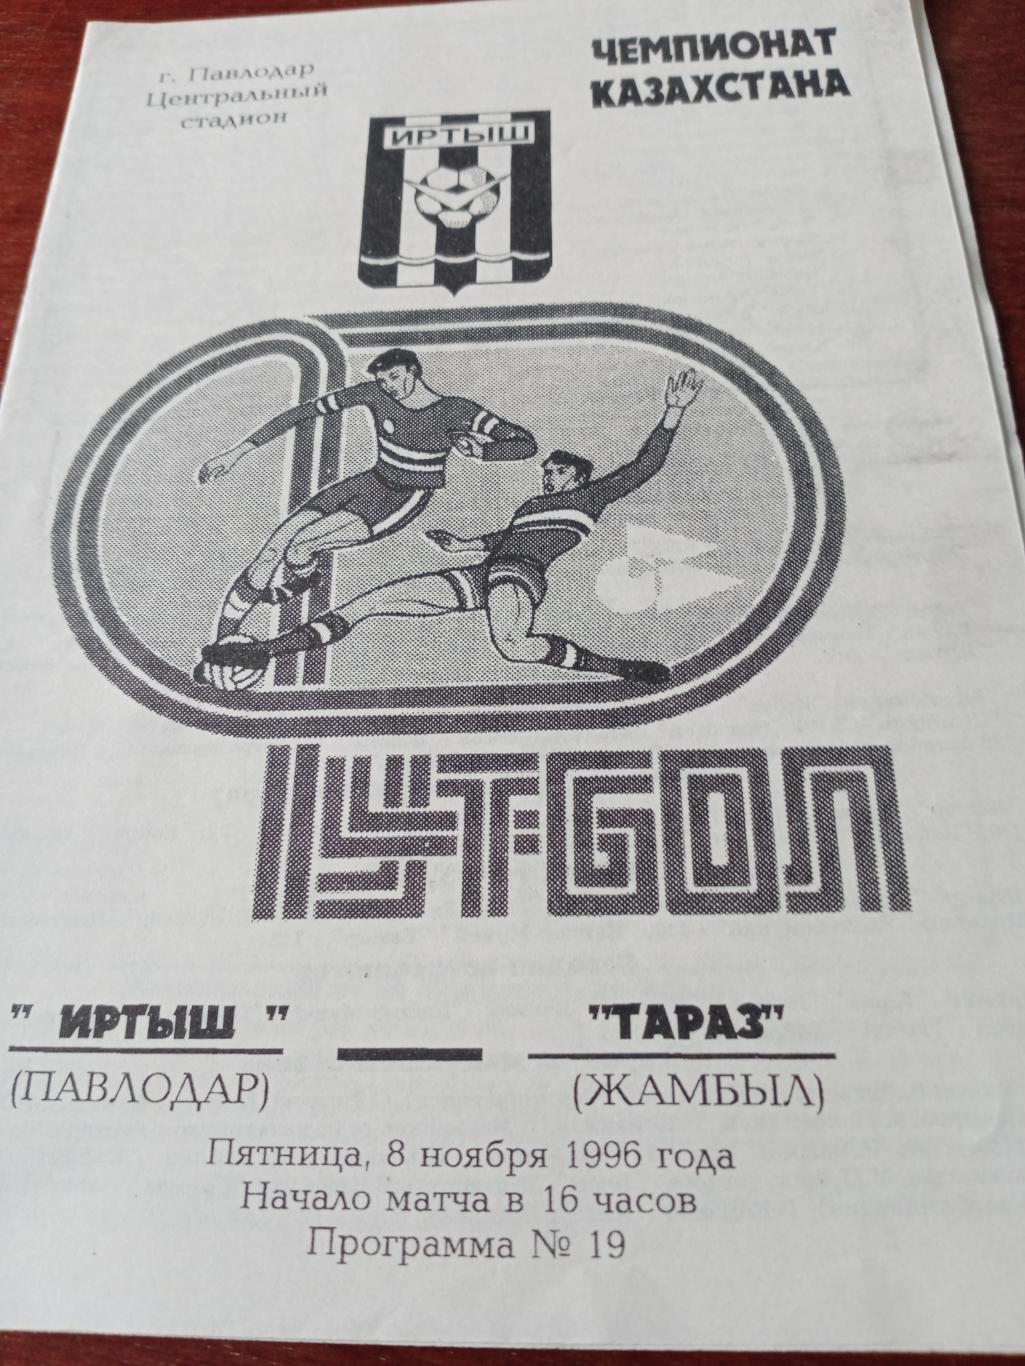 Иртыш Павлодар - Тараз Жамбыл. 8 ноября 1996 год